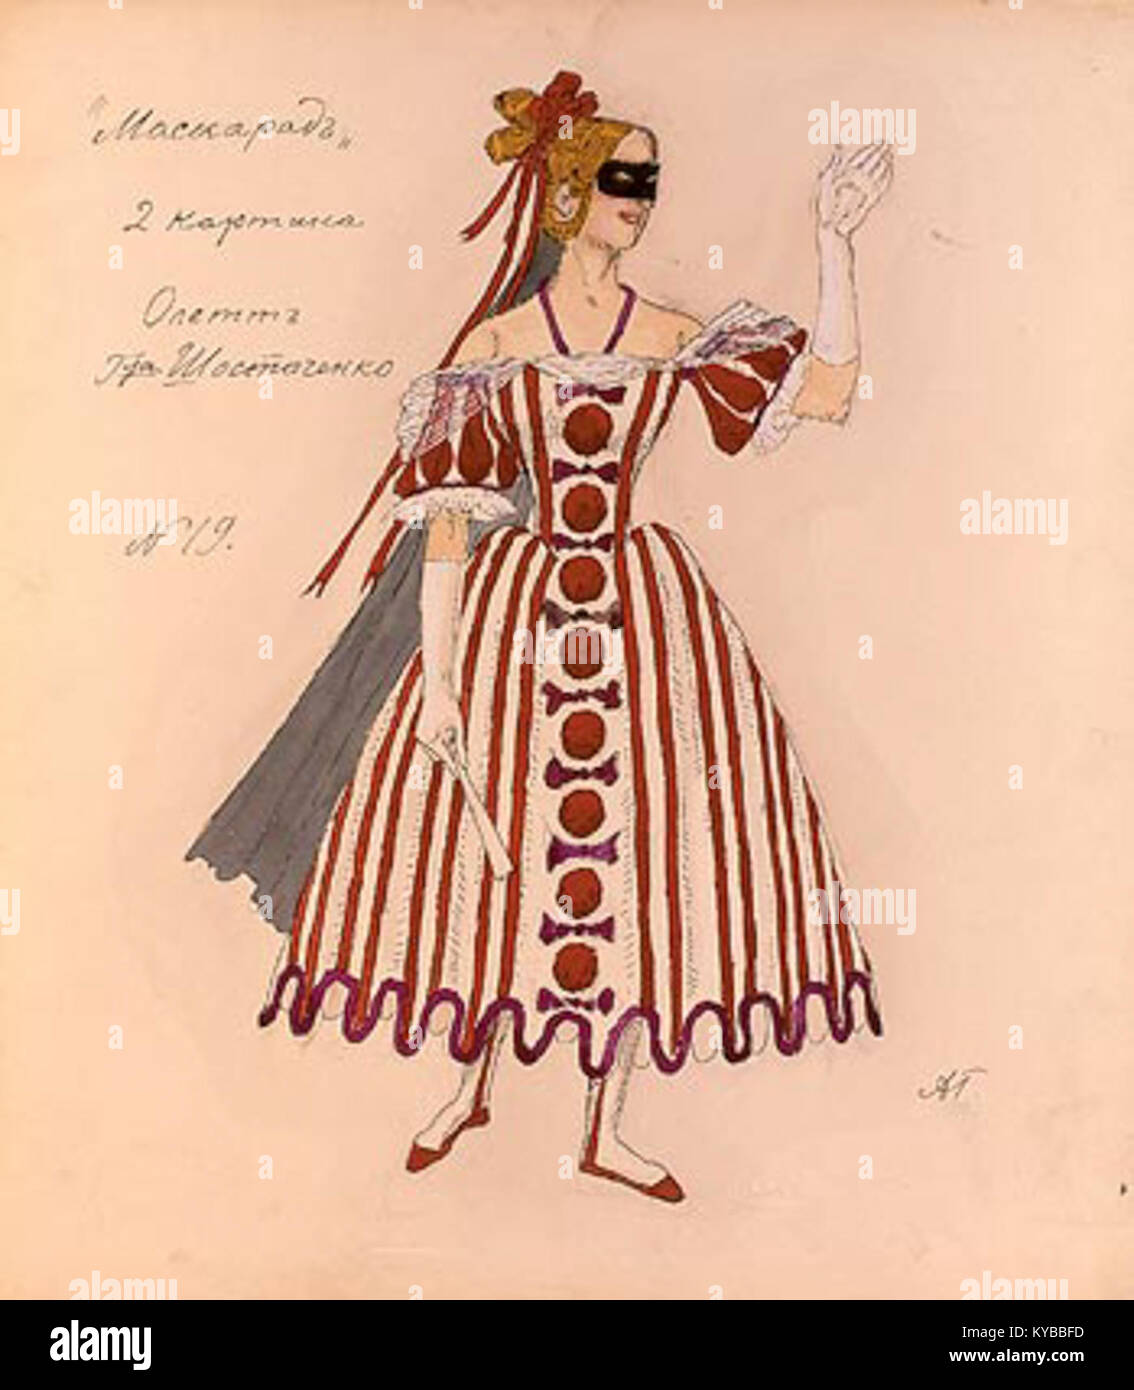 Masquerade par Golovine - Oletta (1917, Musée Bakhrouchine) Banque D'Images